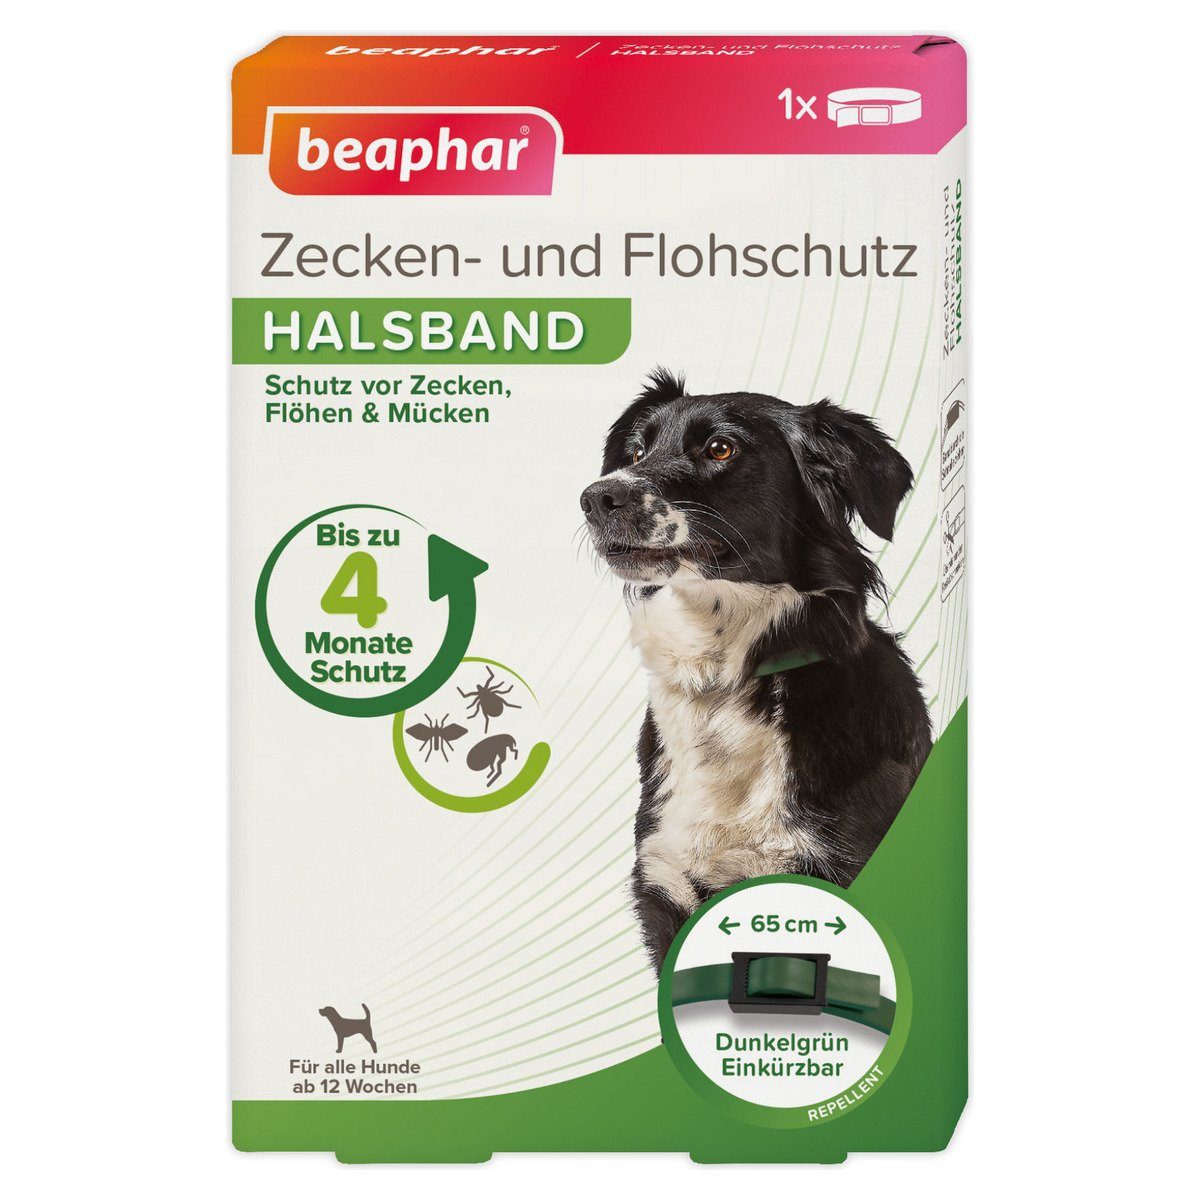 beaphar Zeckenhalsband Beaphar - Zecken- und Flohschutz Halsband für Hunde  - 65 cm